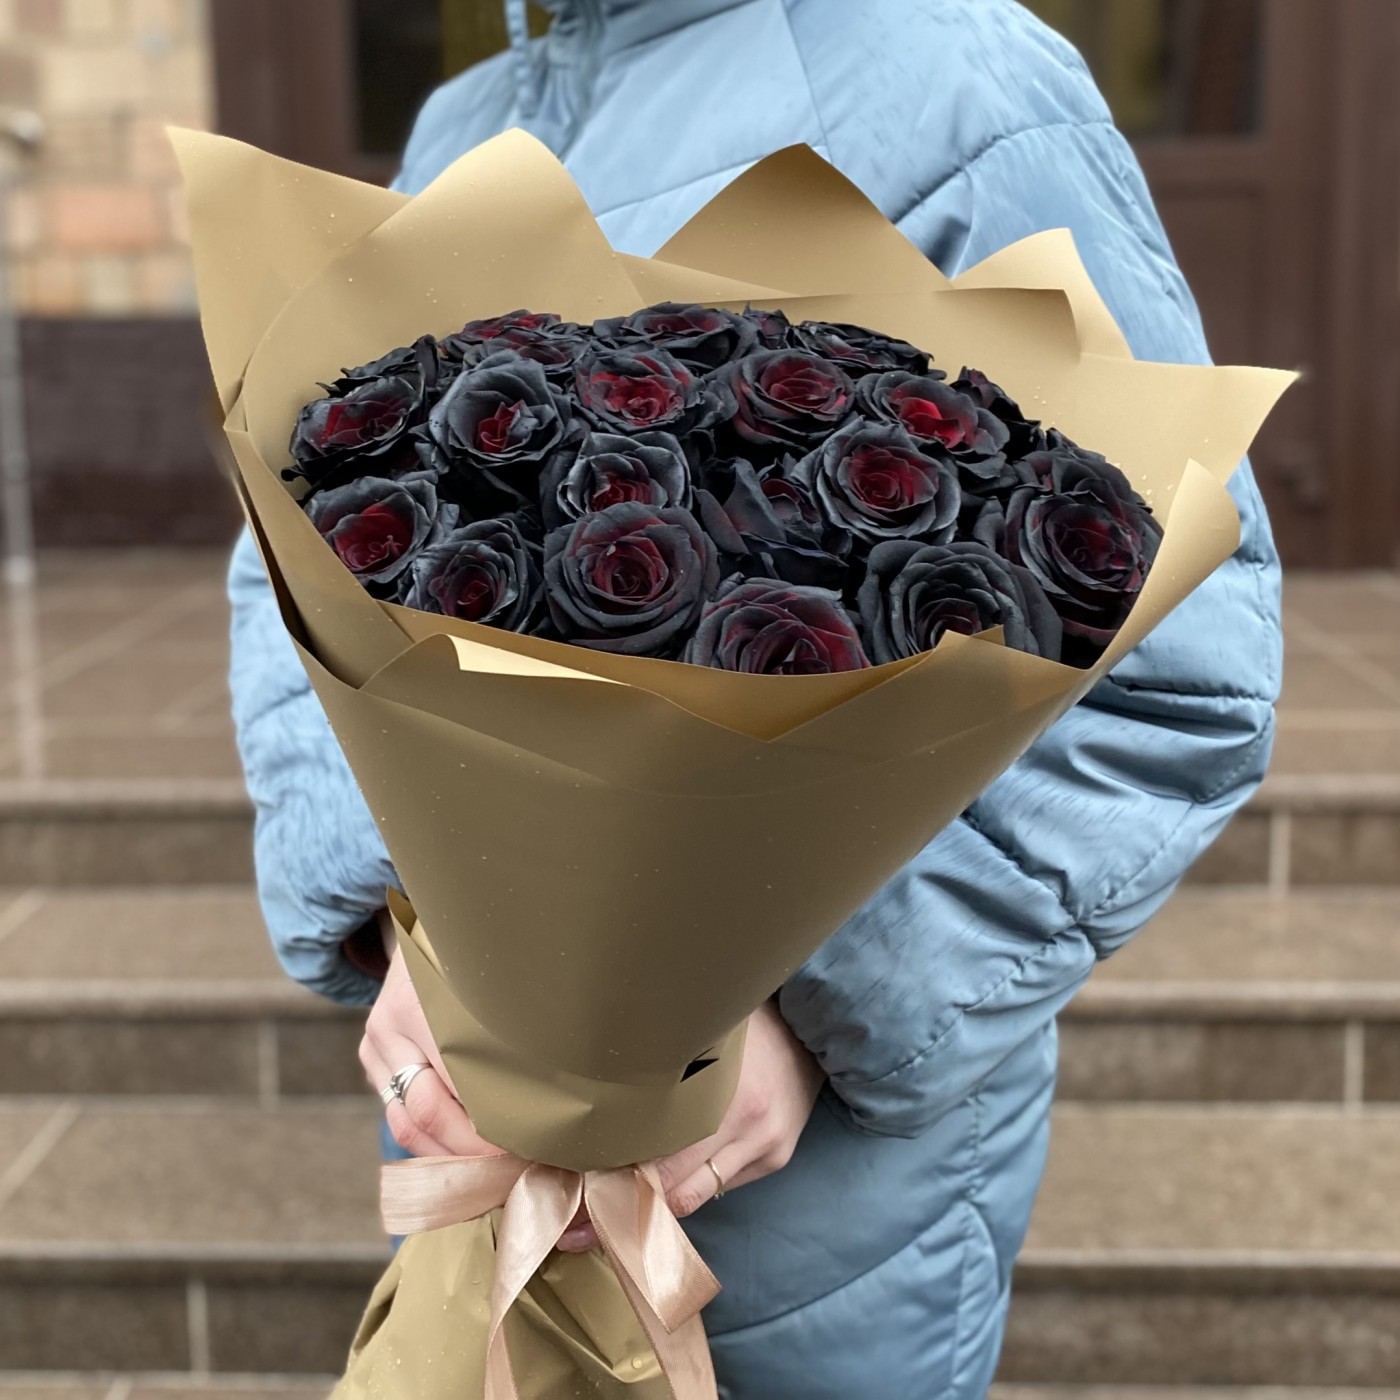 Букет из 25 черных роз